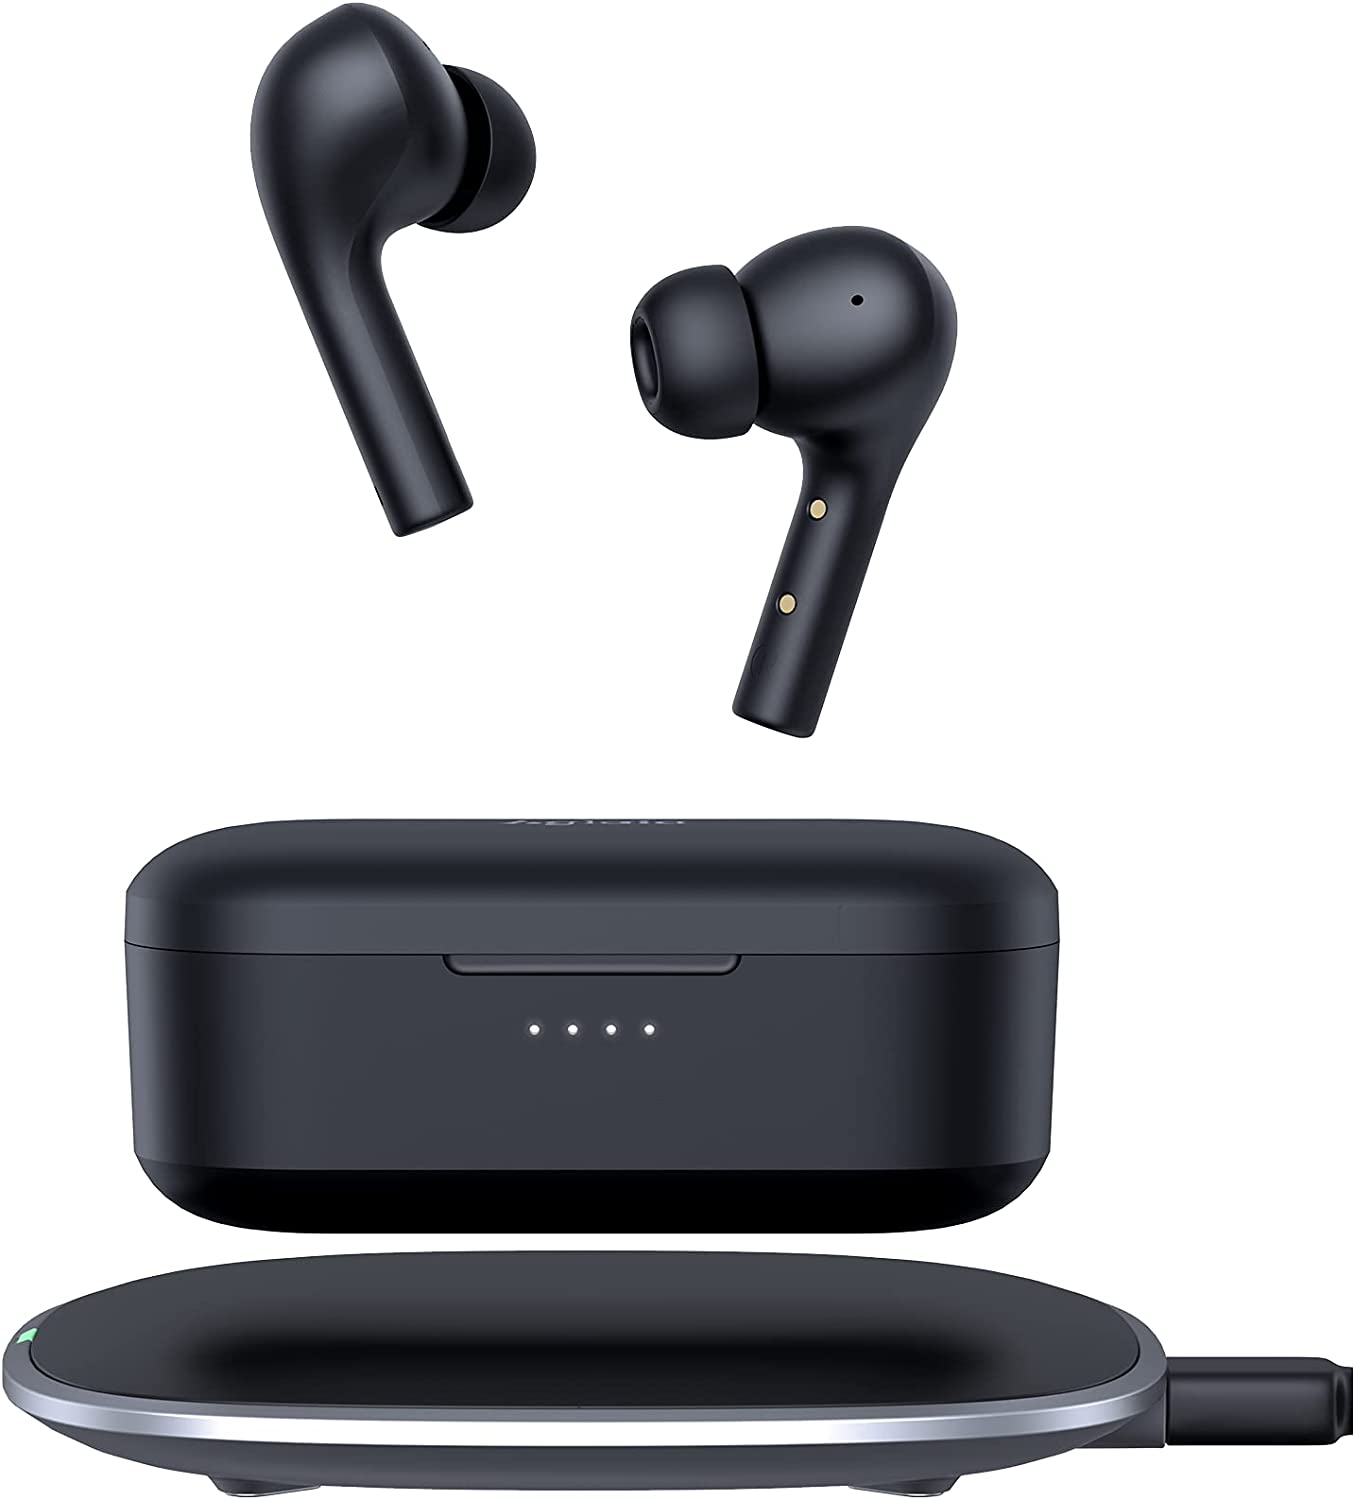 Bild zu Aglaia In-Ear Bluetooth Kopfhörer mit Lade-Case für 23,99€